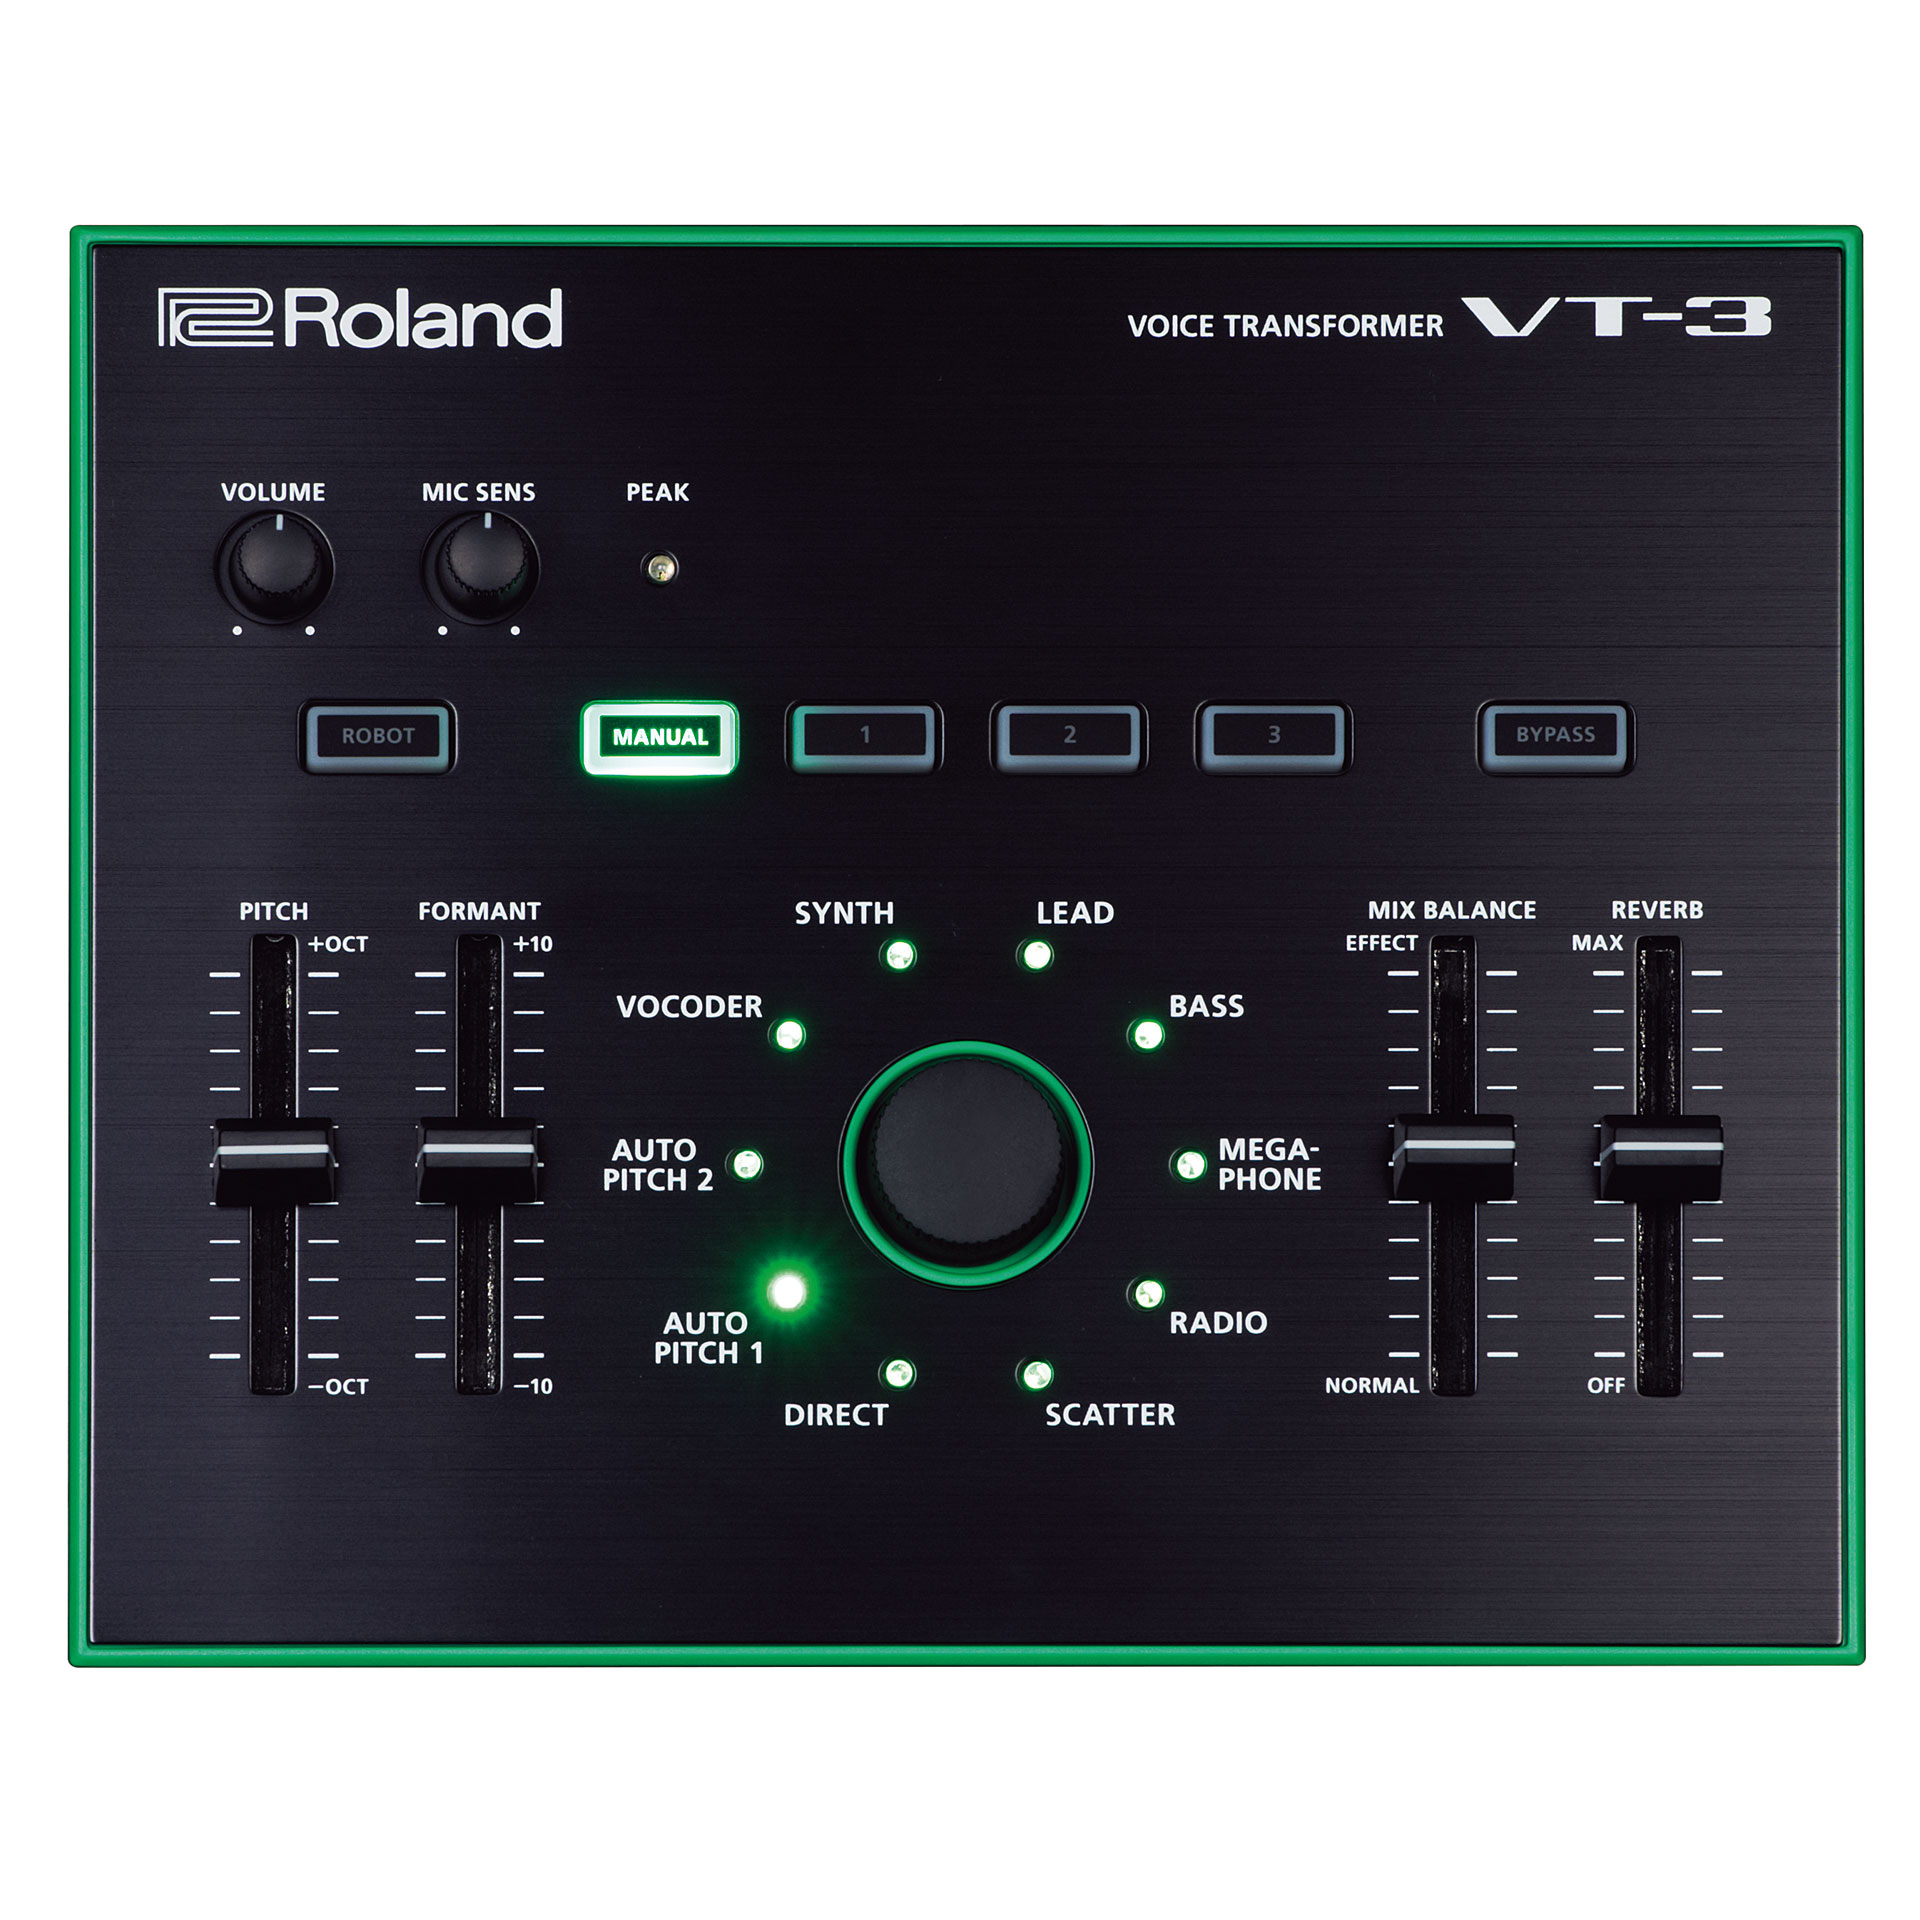 Процессор вокала. Вокальный процессор Aira VT-3 Roland. Rolland Aira vt3. Процессор Roland 202. Boss VT-3.